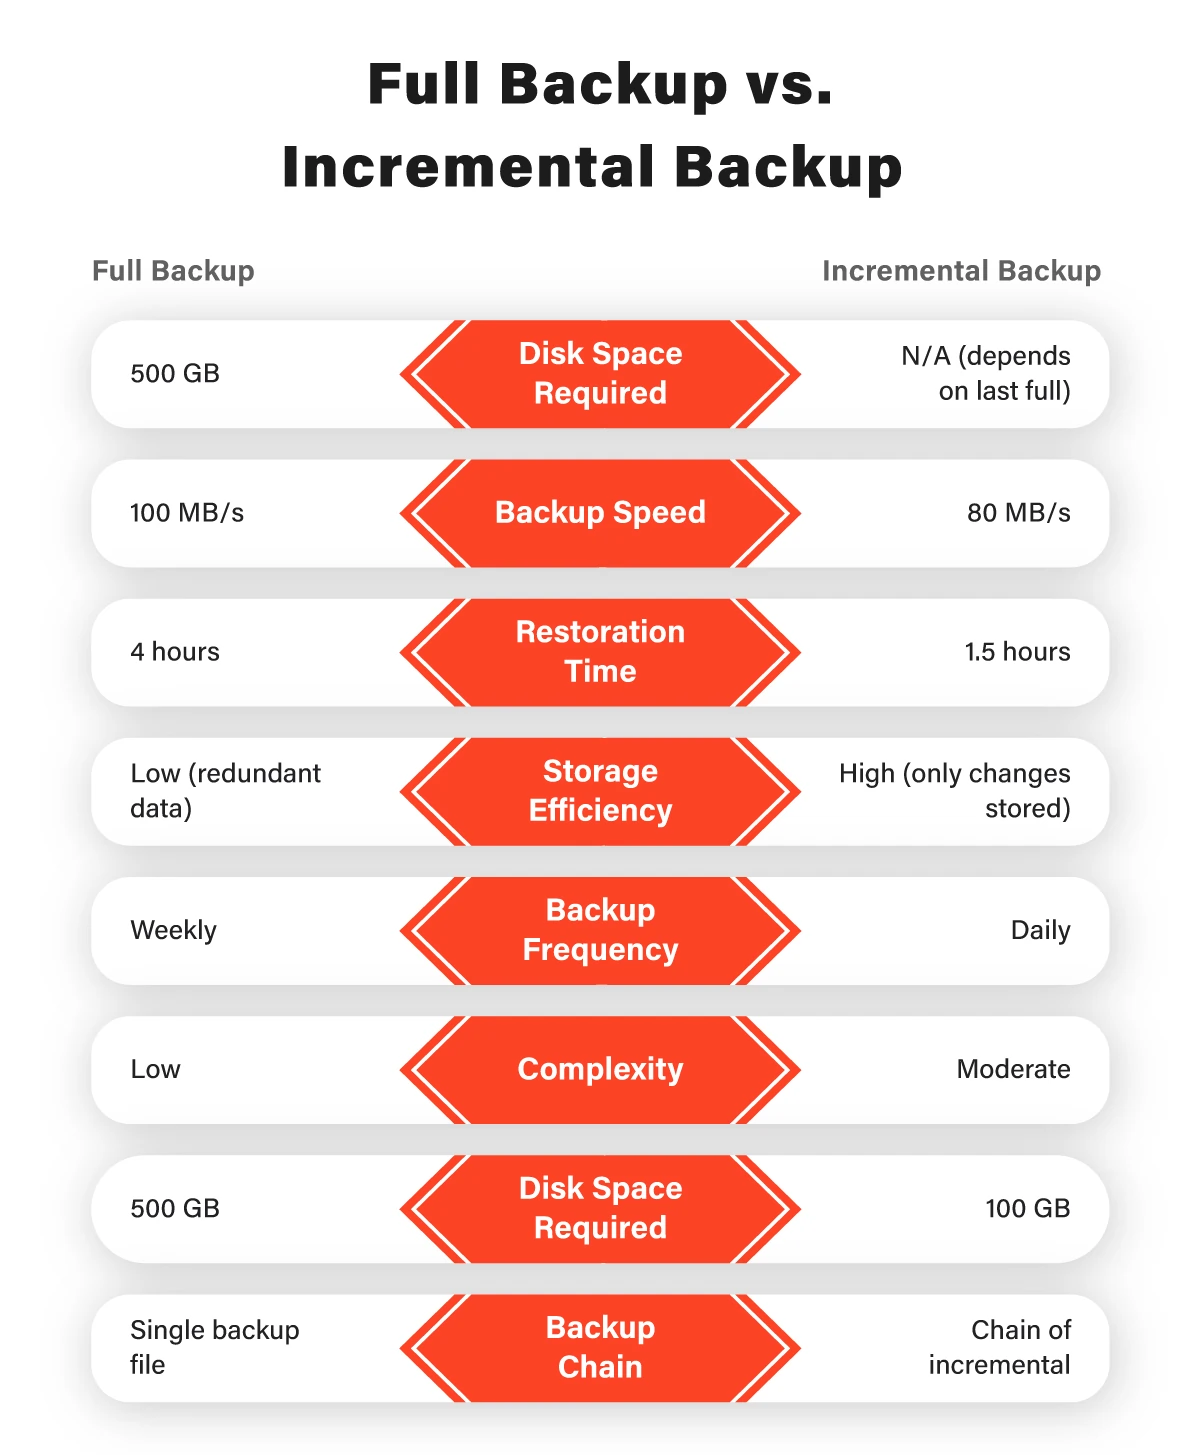 Full Backup vs. Incremental Backup